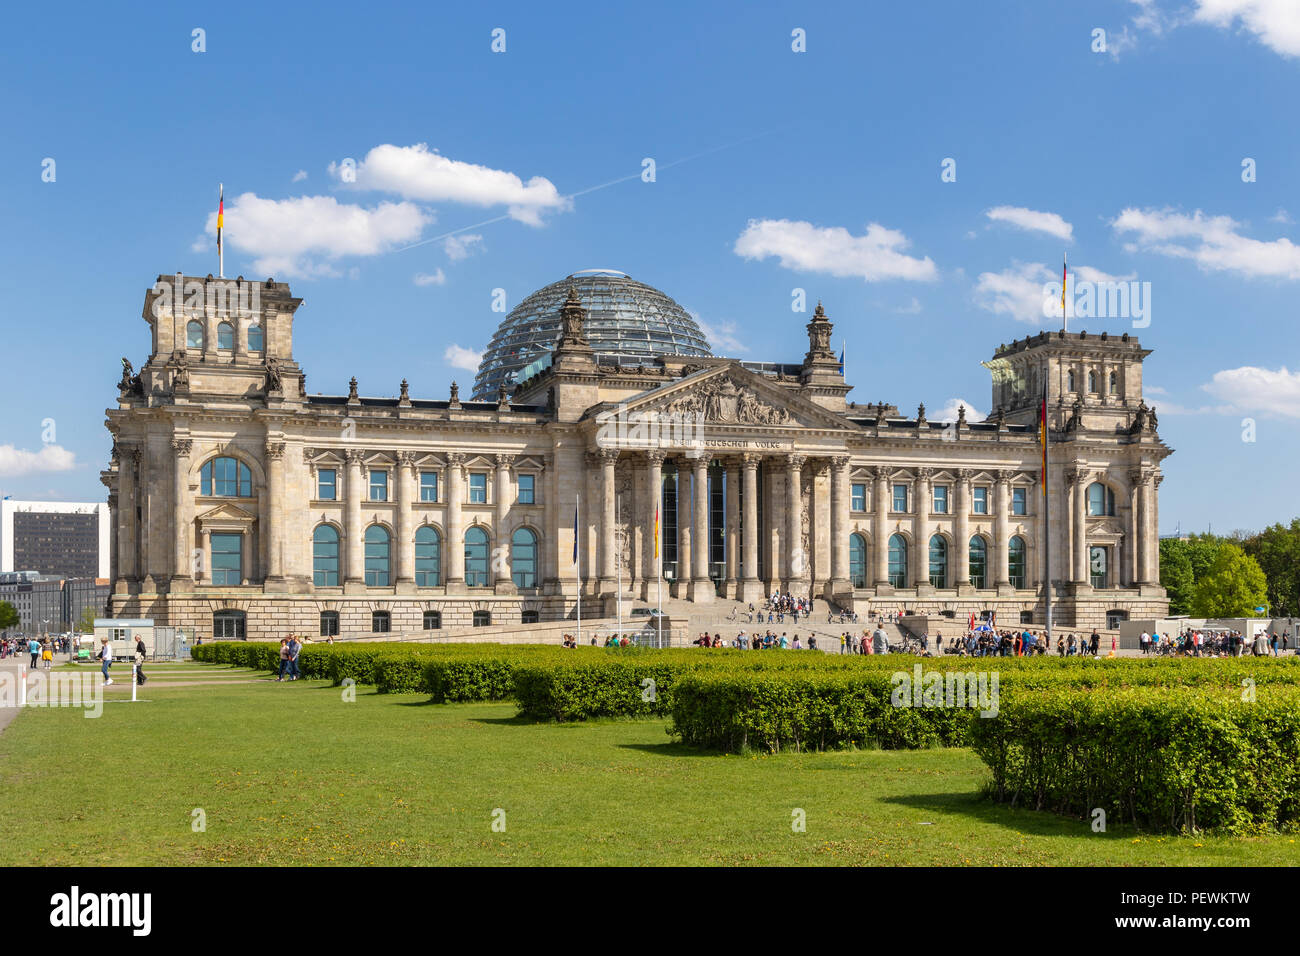 Berlino, Germania - Apr 28, 2018: persone rilassarsi sul prato di fronte al Reichstag, sede del Parlamento tedesco (Deutscher Bundestag). Foto Stock